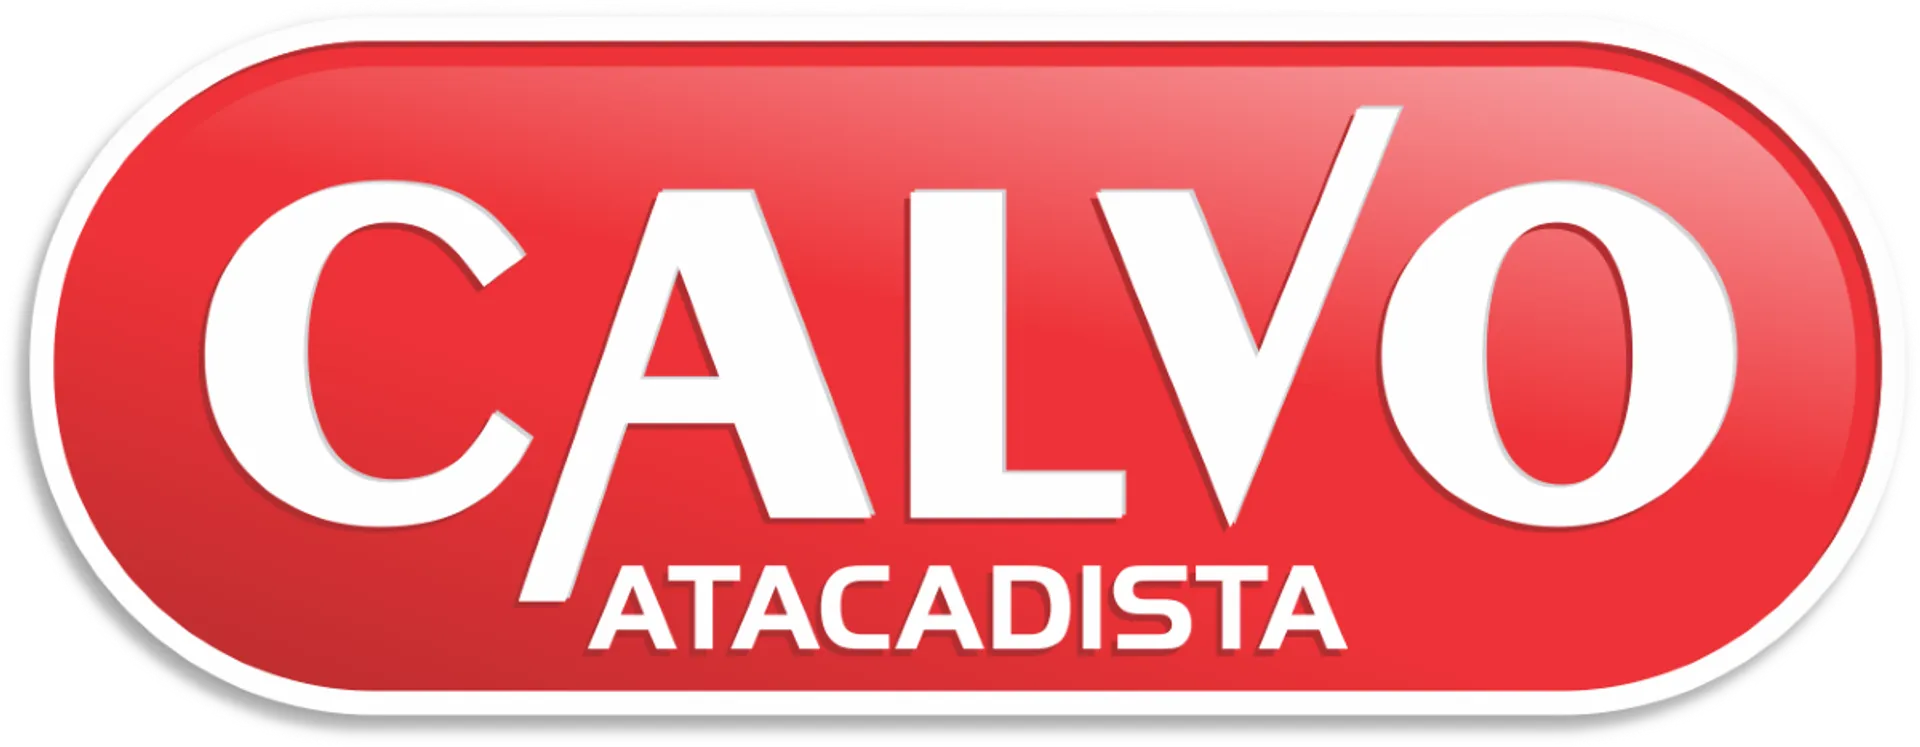 CALVO ATACADISTA logo